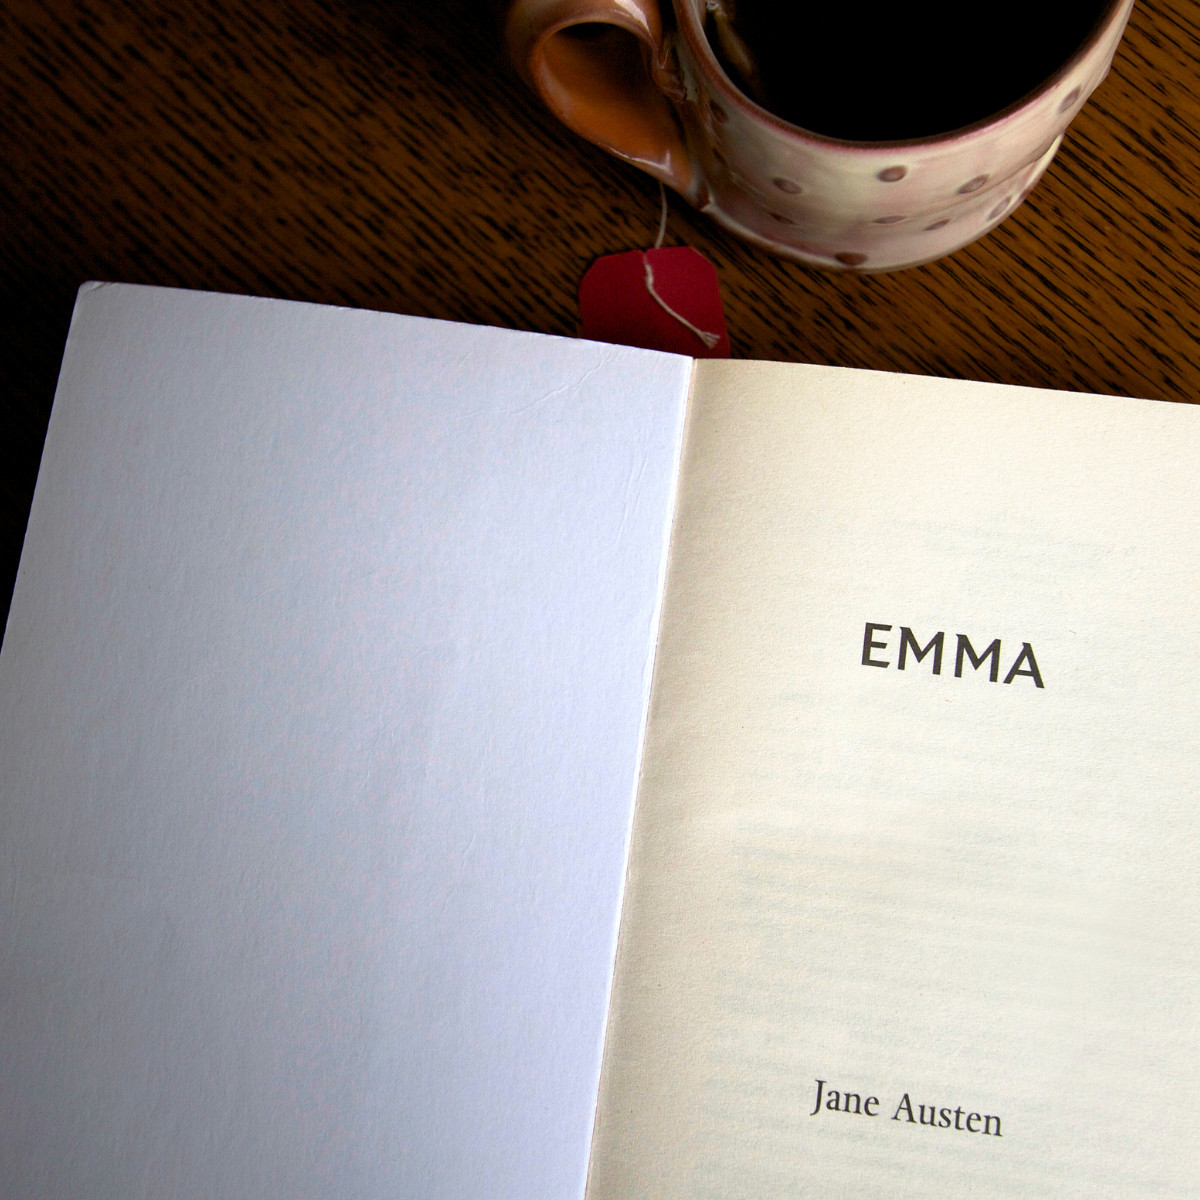 emma by jane austen book